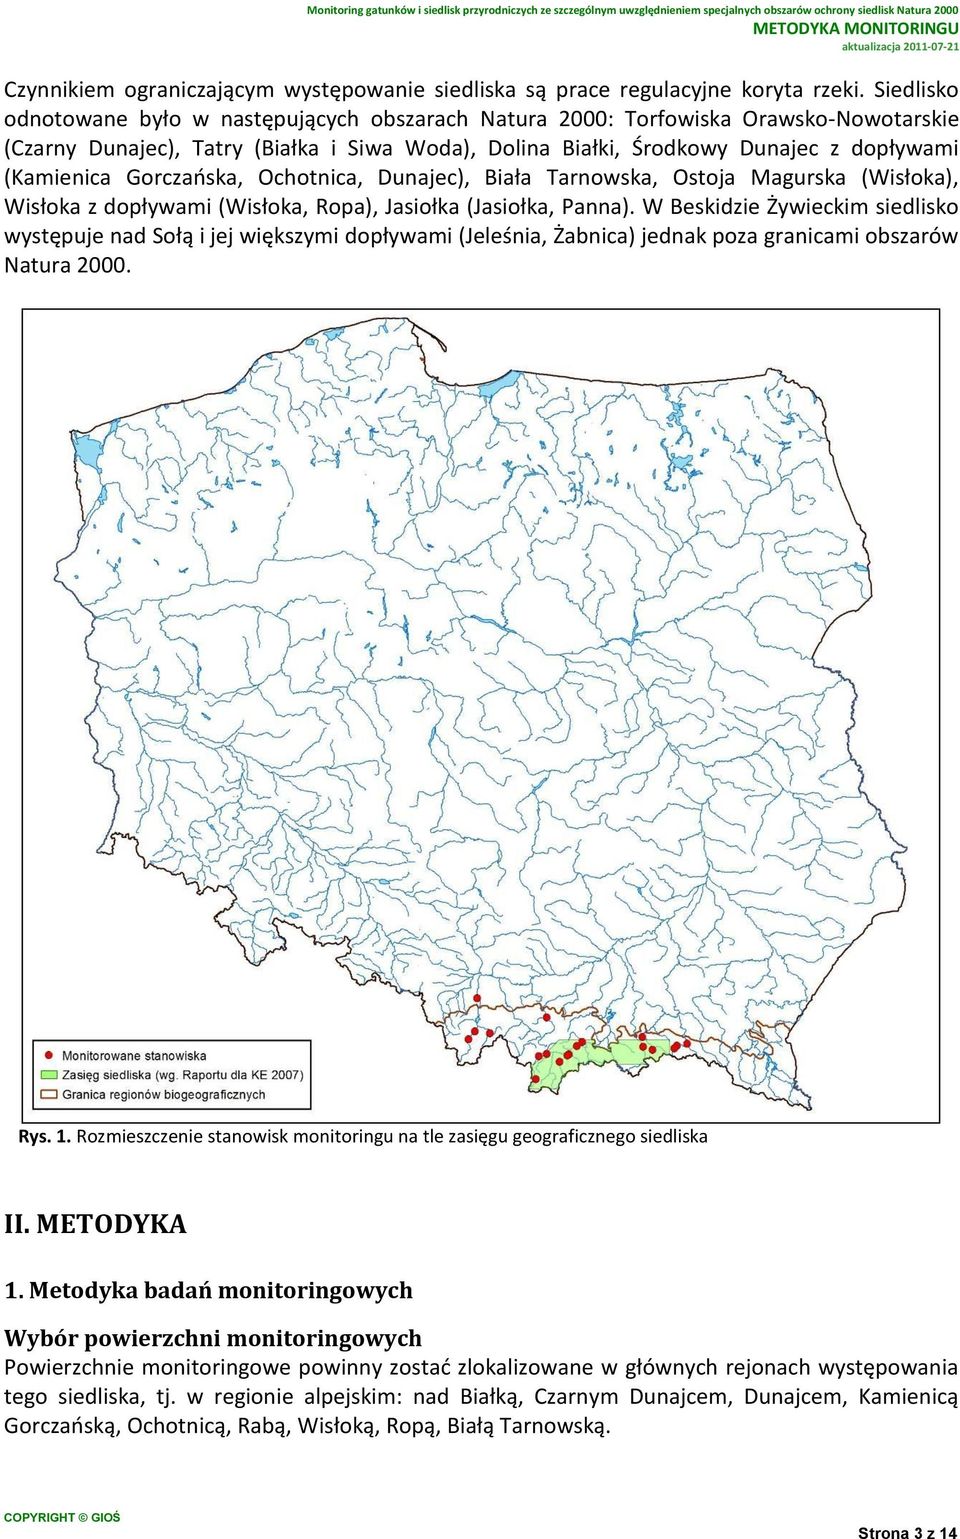 Gorczańska, Ochotnica, Dunajec), Biała Tarnowska, Ostoja Magurska (Wisłoka), Wisłoka z dopływami (Wisłoka, Ropa), Jasiołka (Jasiołka, Panna).